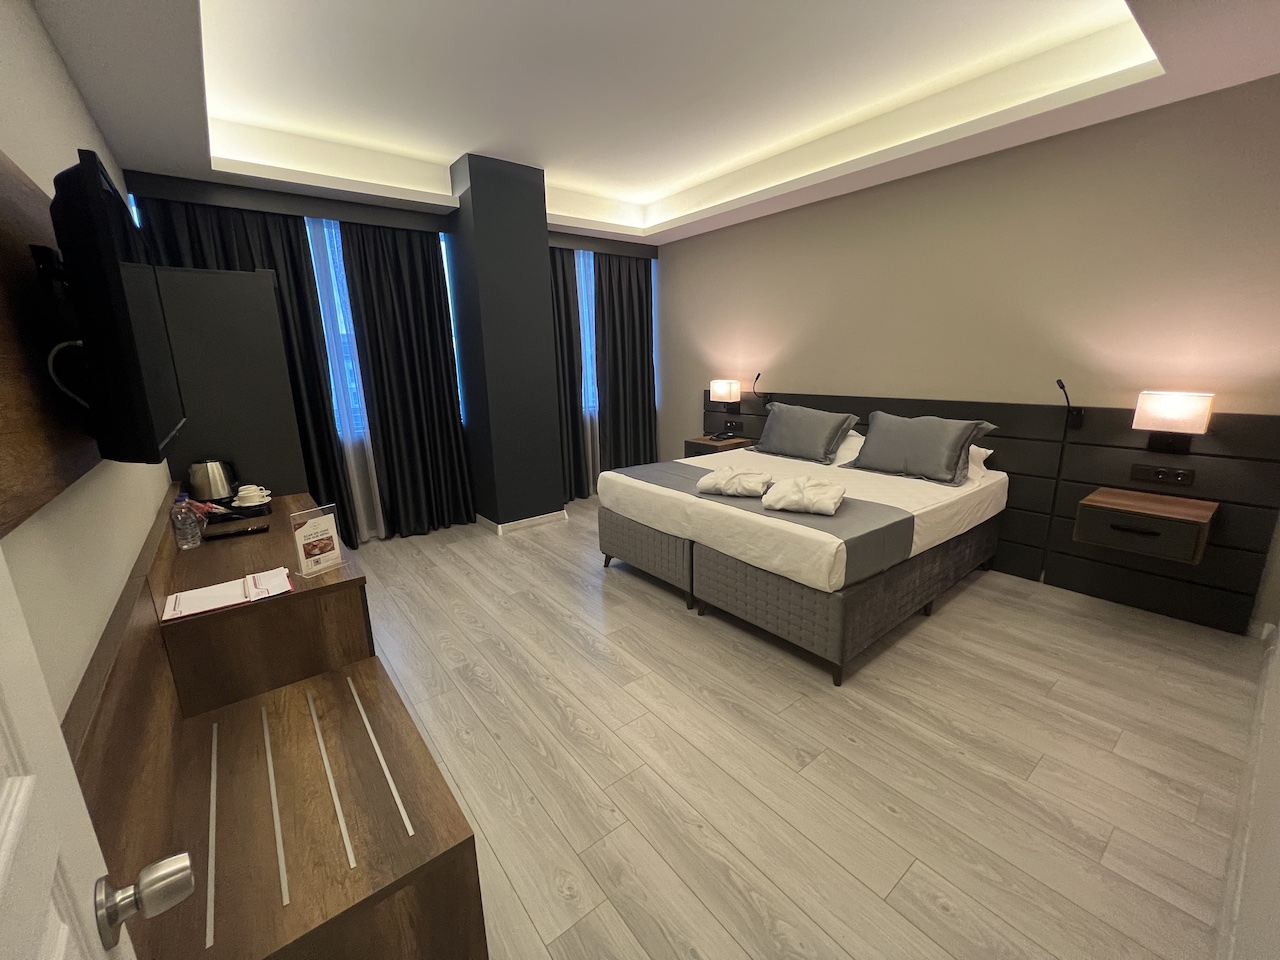 Two-Bedroom Suit Room